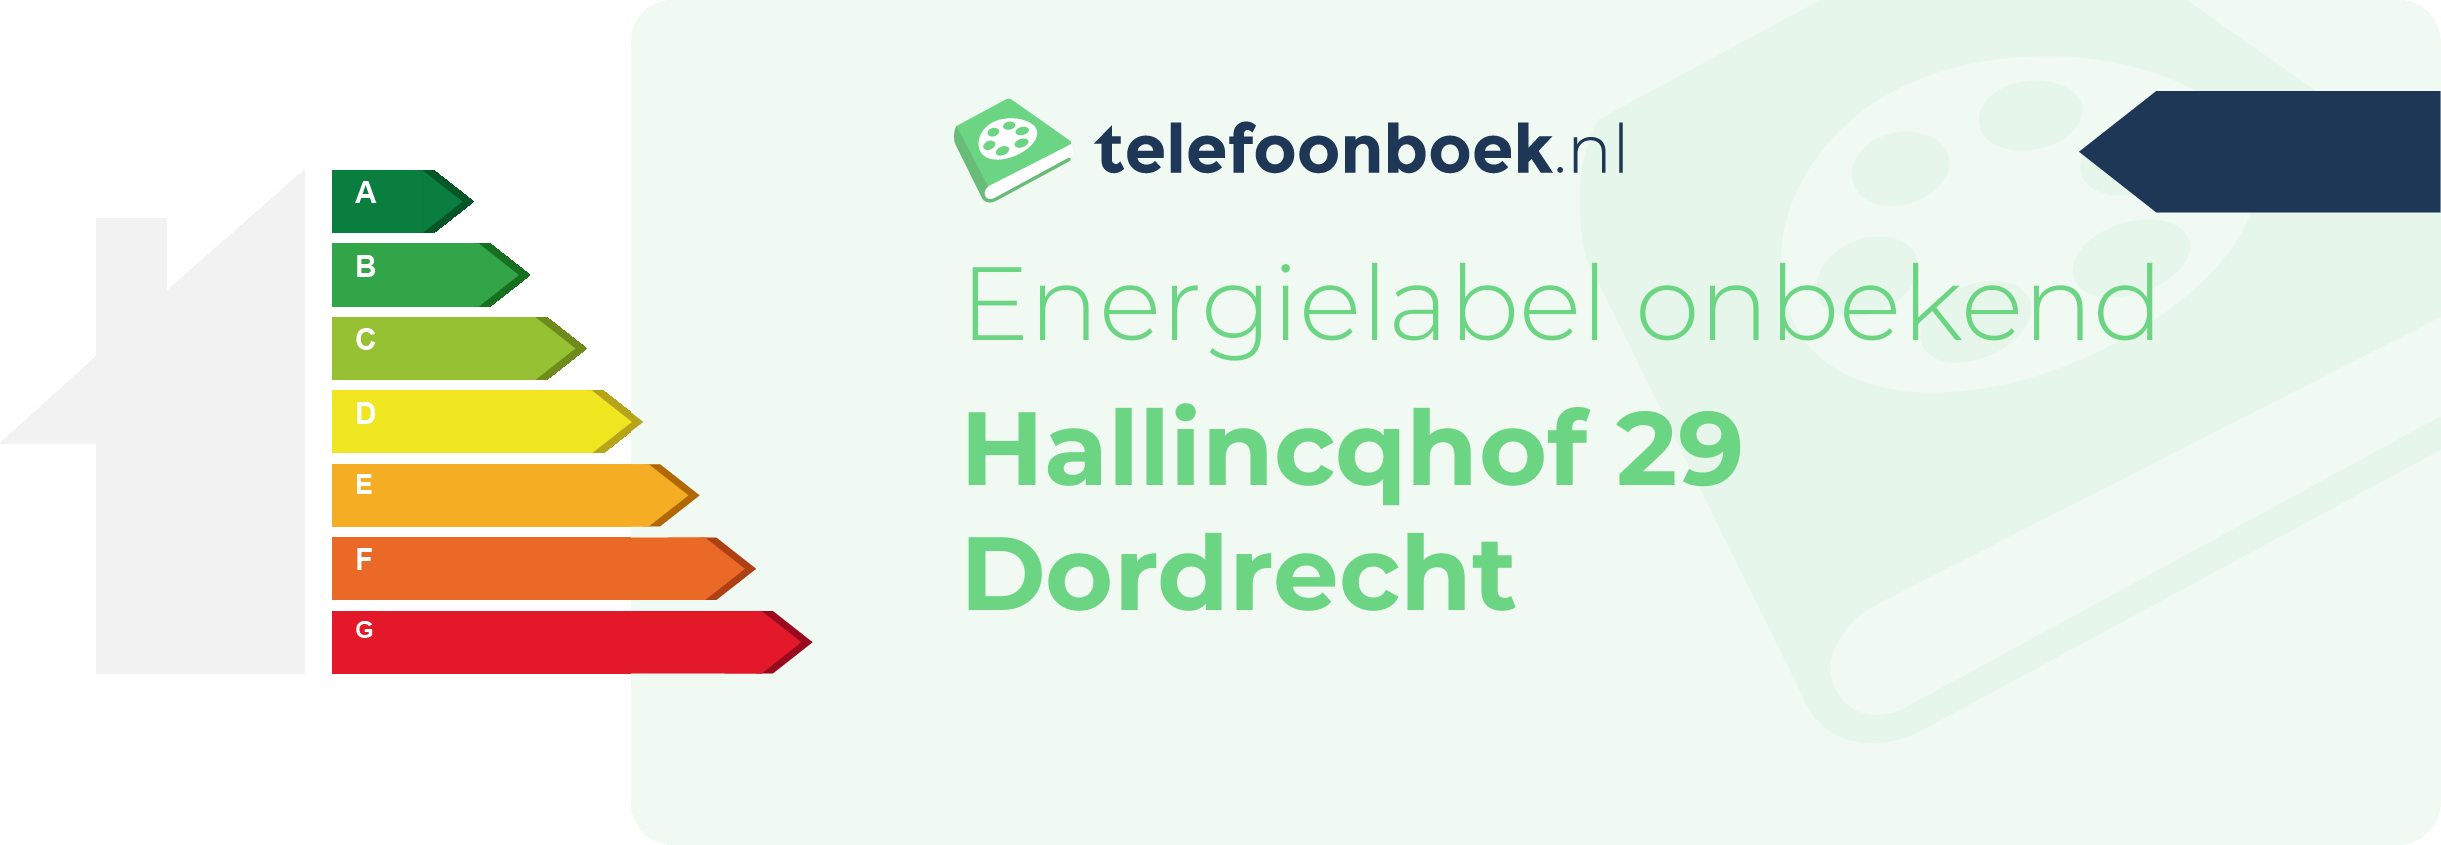 Energielabel Hallincqhof 29 Dordrecht